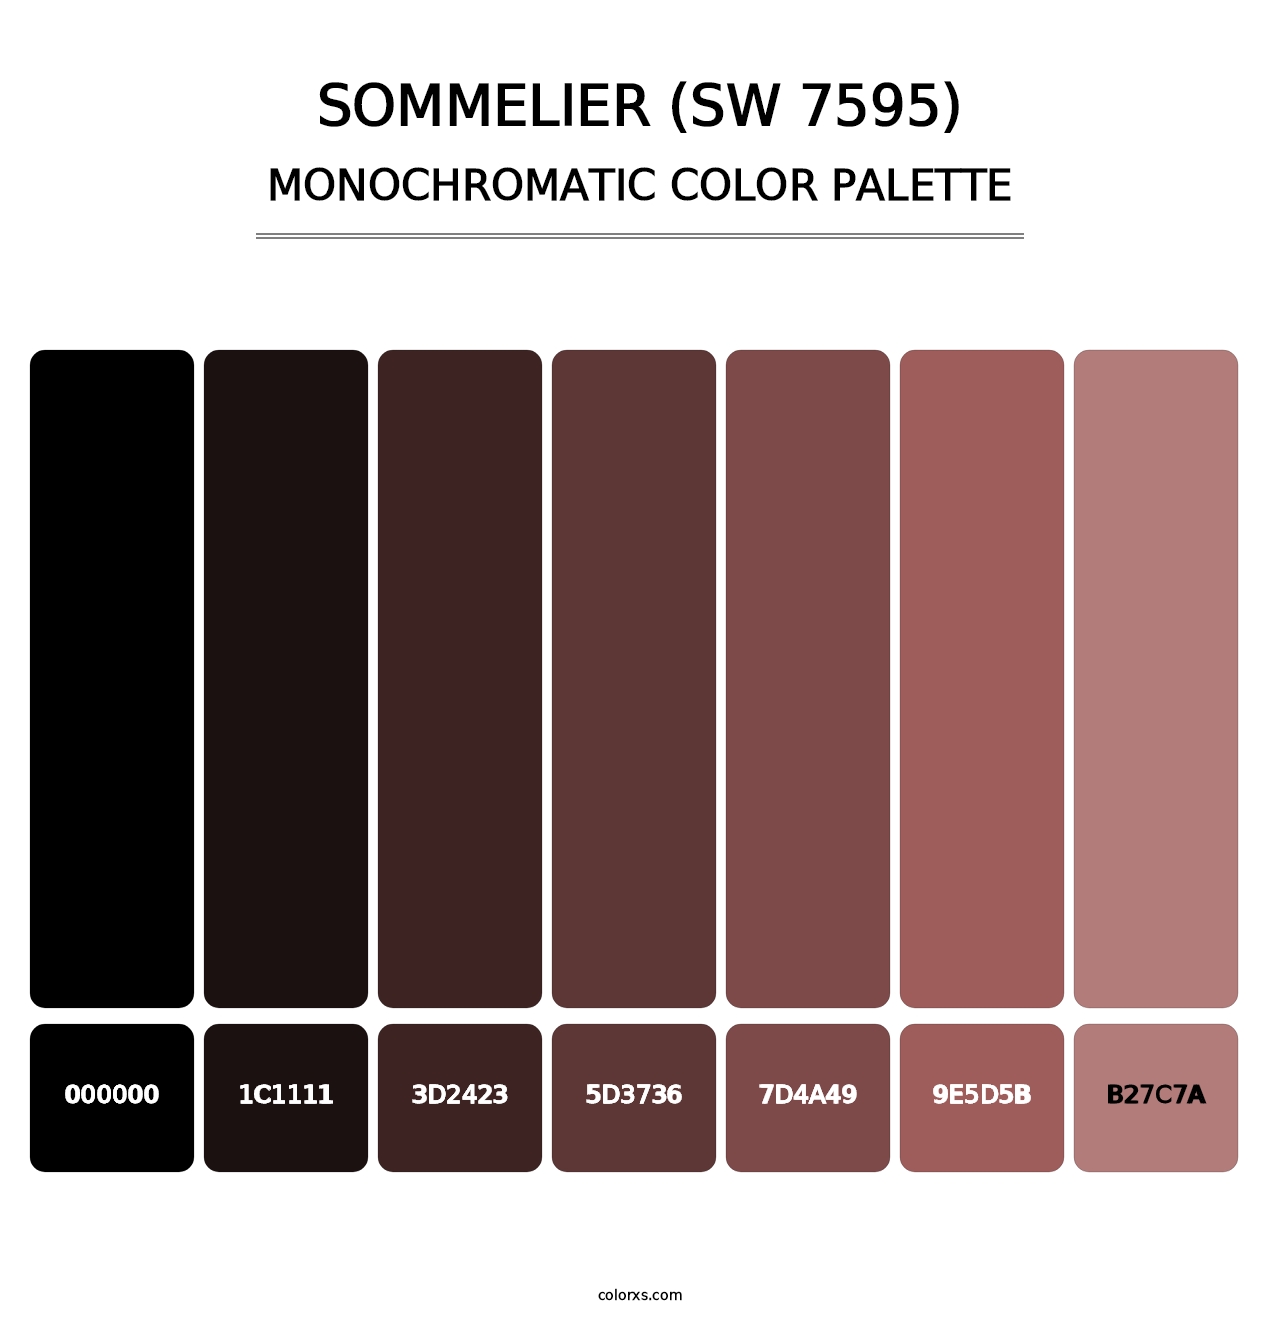 Sommelier (SW 7595) - Monochromatic Color Palette